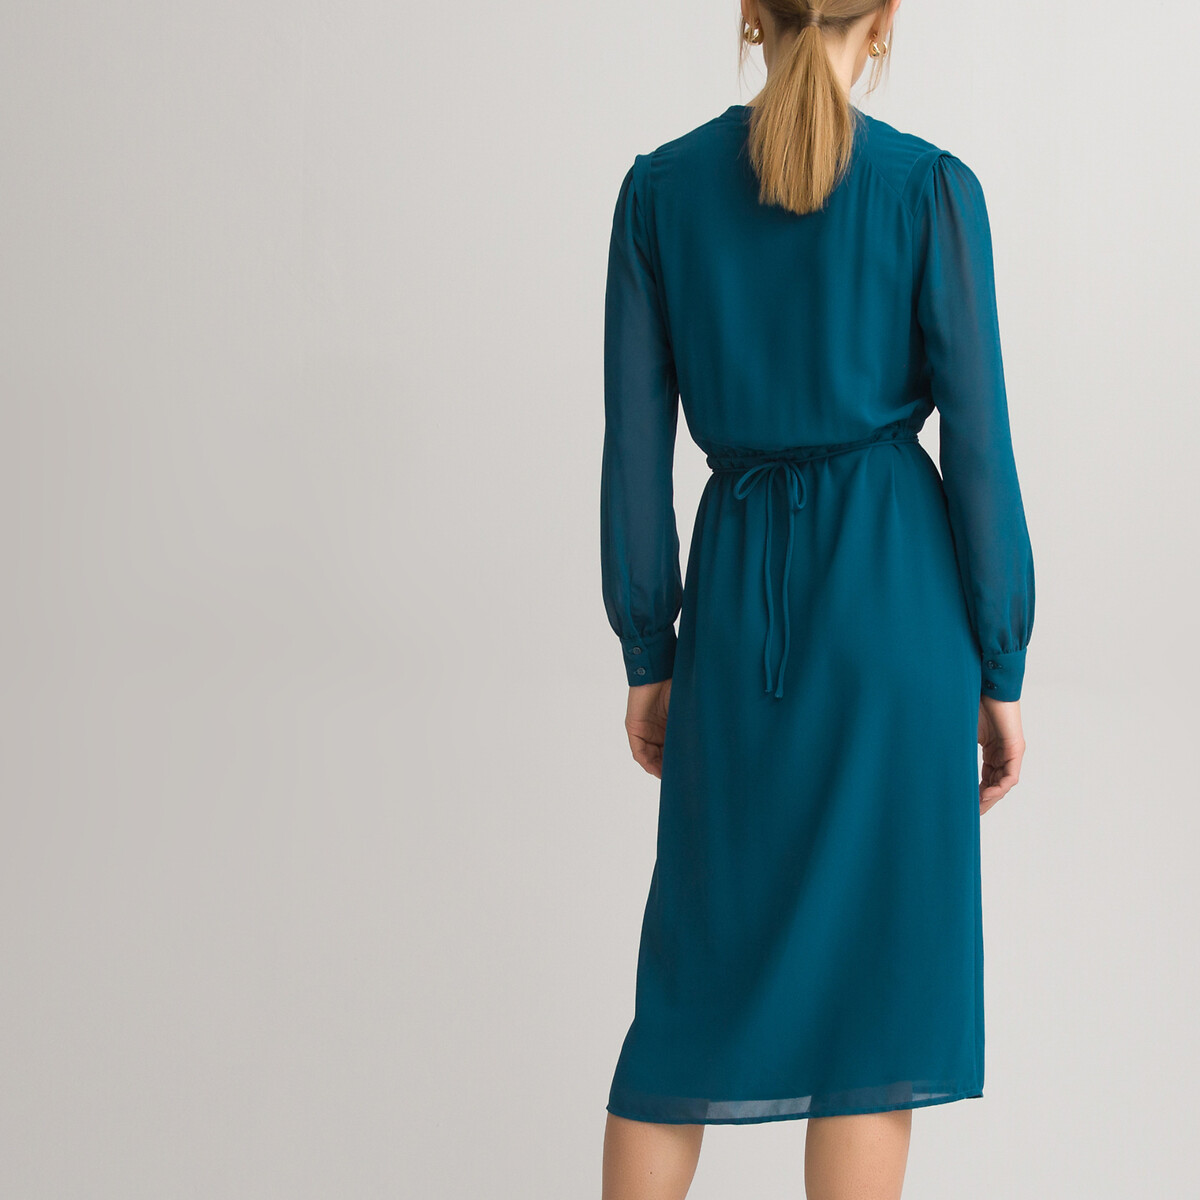 Платье-рубашка LaRedoute С круглым вырезом и длинными рукавами 52 (FR) - 58 (RUS) синий, размер 52 (FR) - 58 (RUS) С круглым вырезом и длинными рукавами 52 (FR) - 58 (RUS) синий - фото 4